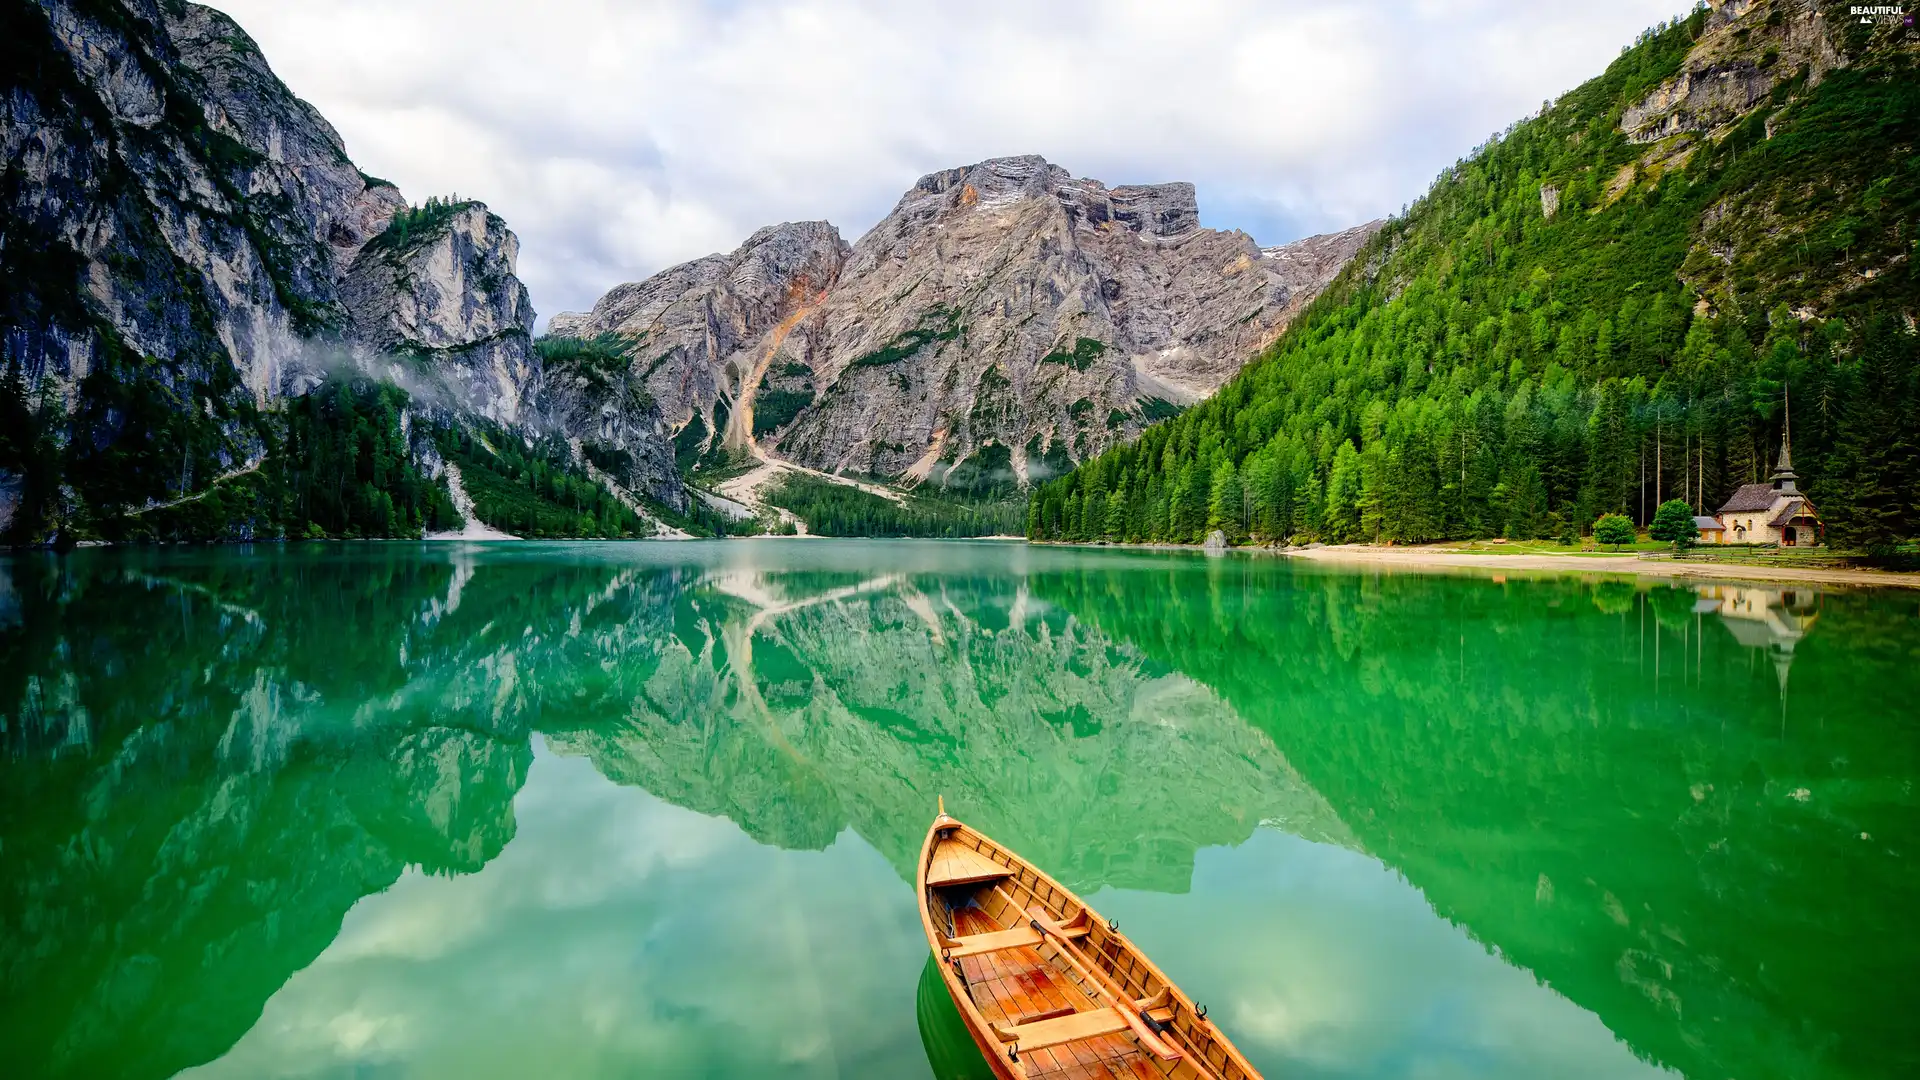 Mountains, Dolomites, woods, Pragser Wildsee Lake, Church, Tirol, Italy, Boat